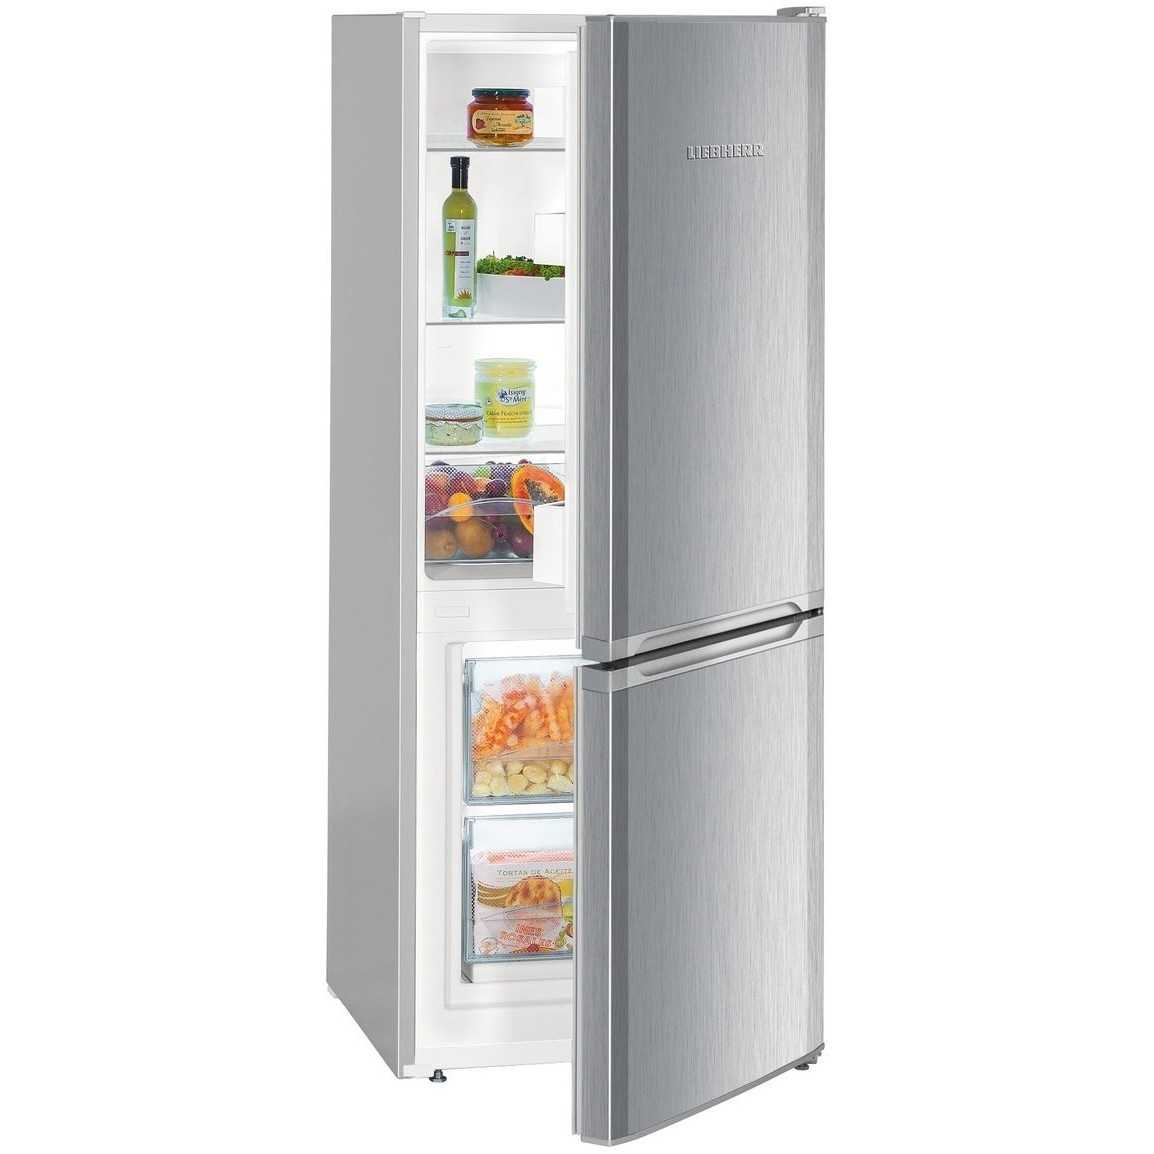 16 лучших холодильников side by side - рейтинг 2021